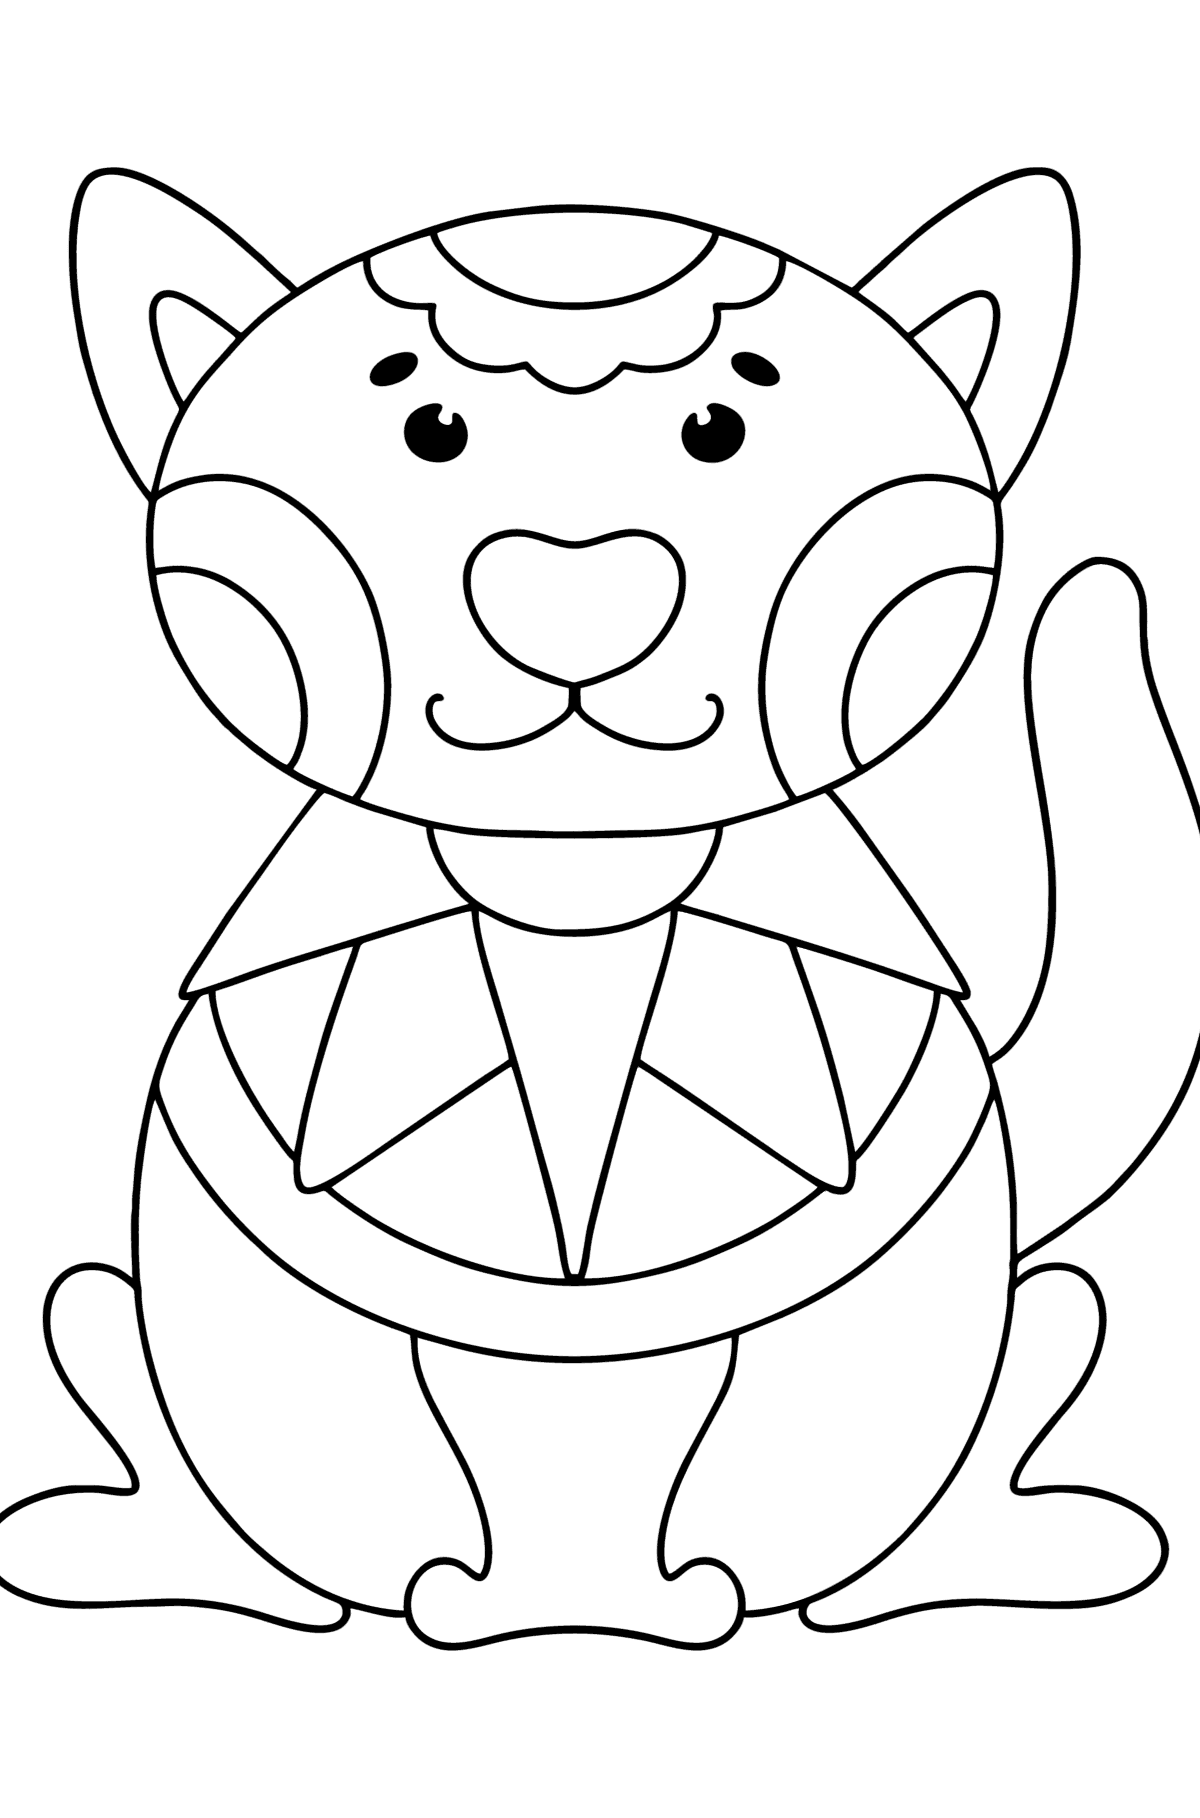 Розмальовка кота антистрес - Розмальовки для дітей